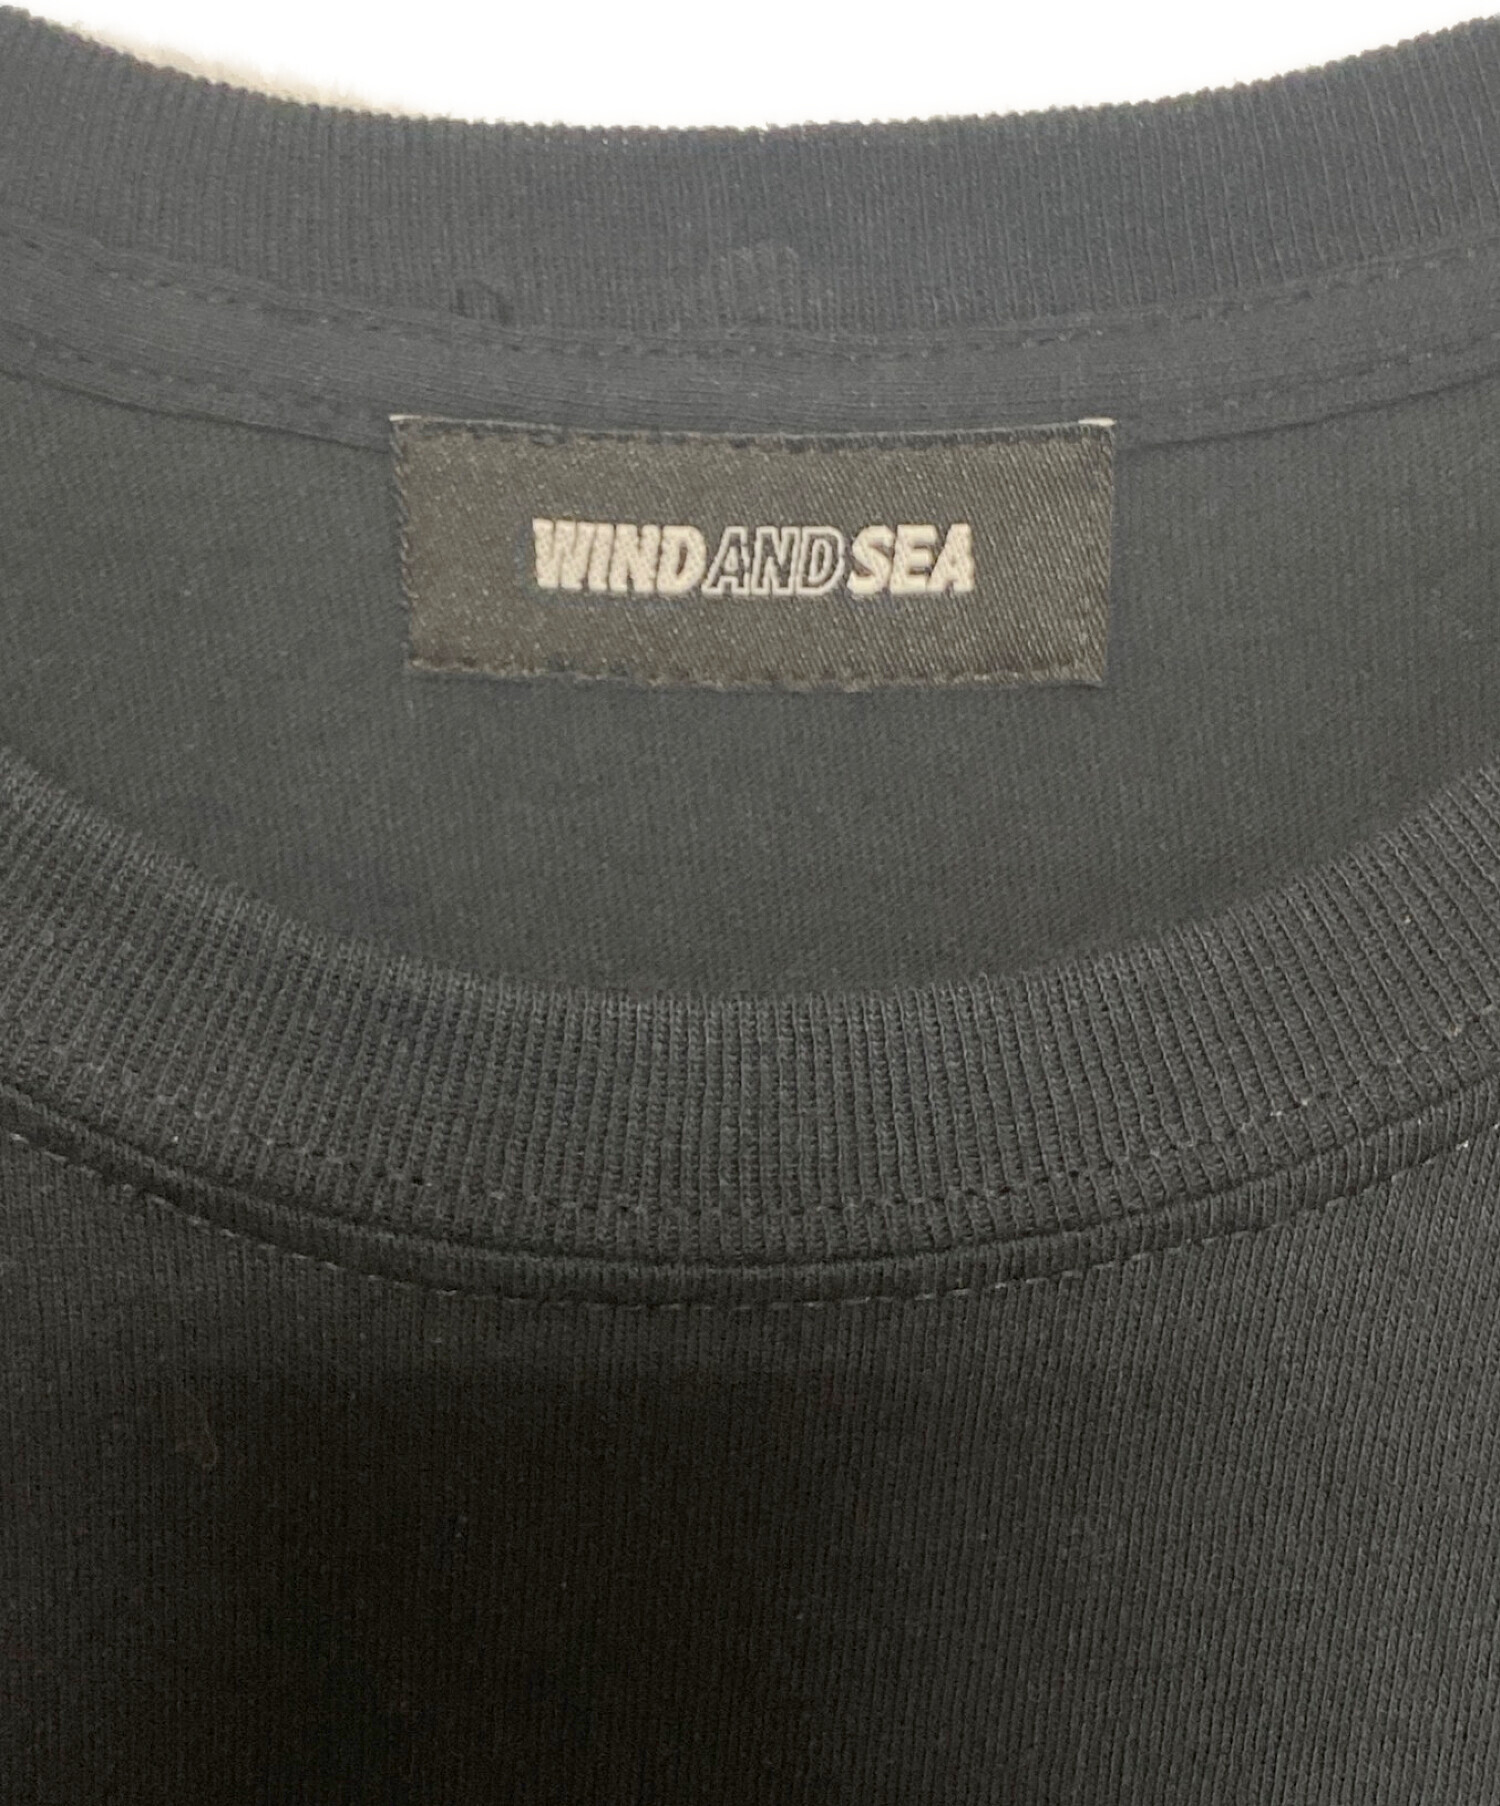 WIND AND SEA (ウィンダンシー) WOLF AND SEA GLITTER PRINT T-SHIRT ブラック サイズ:L 未使用品